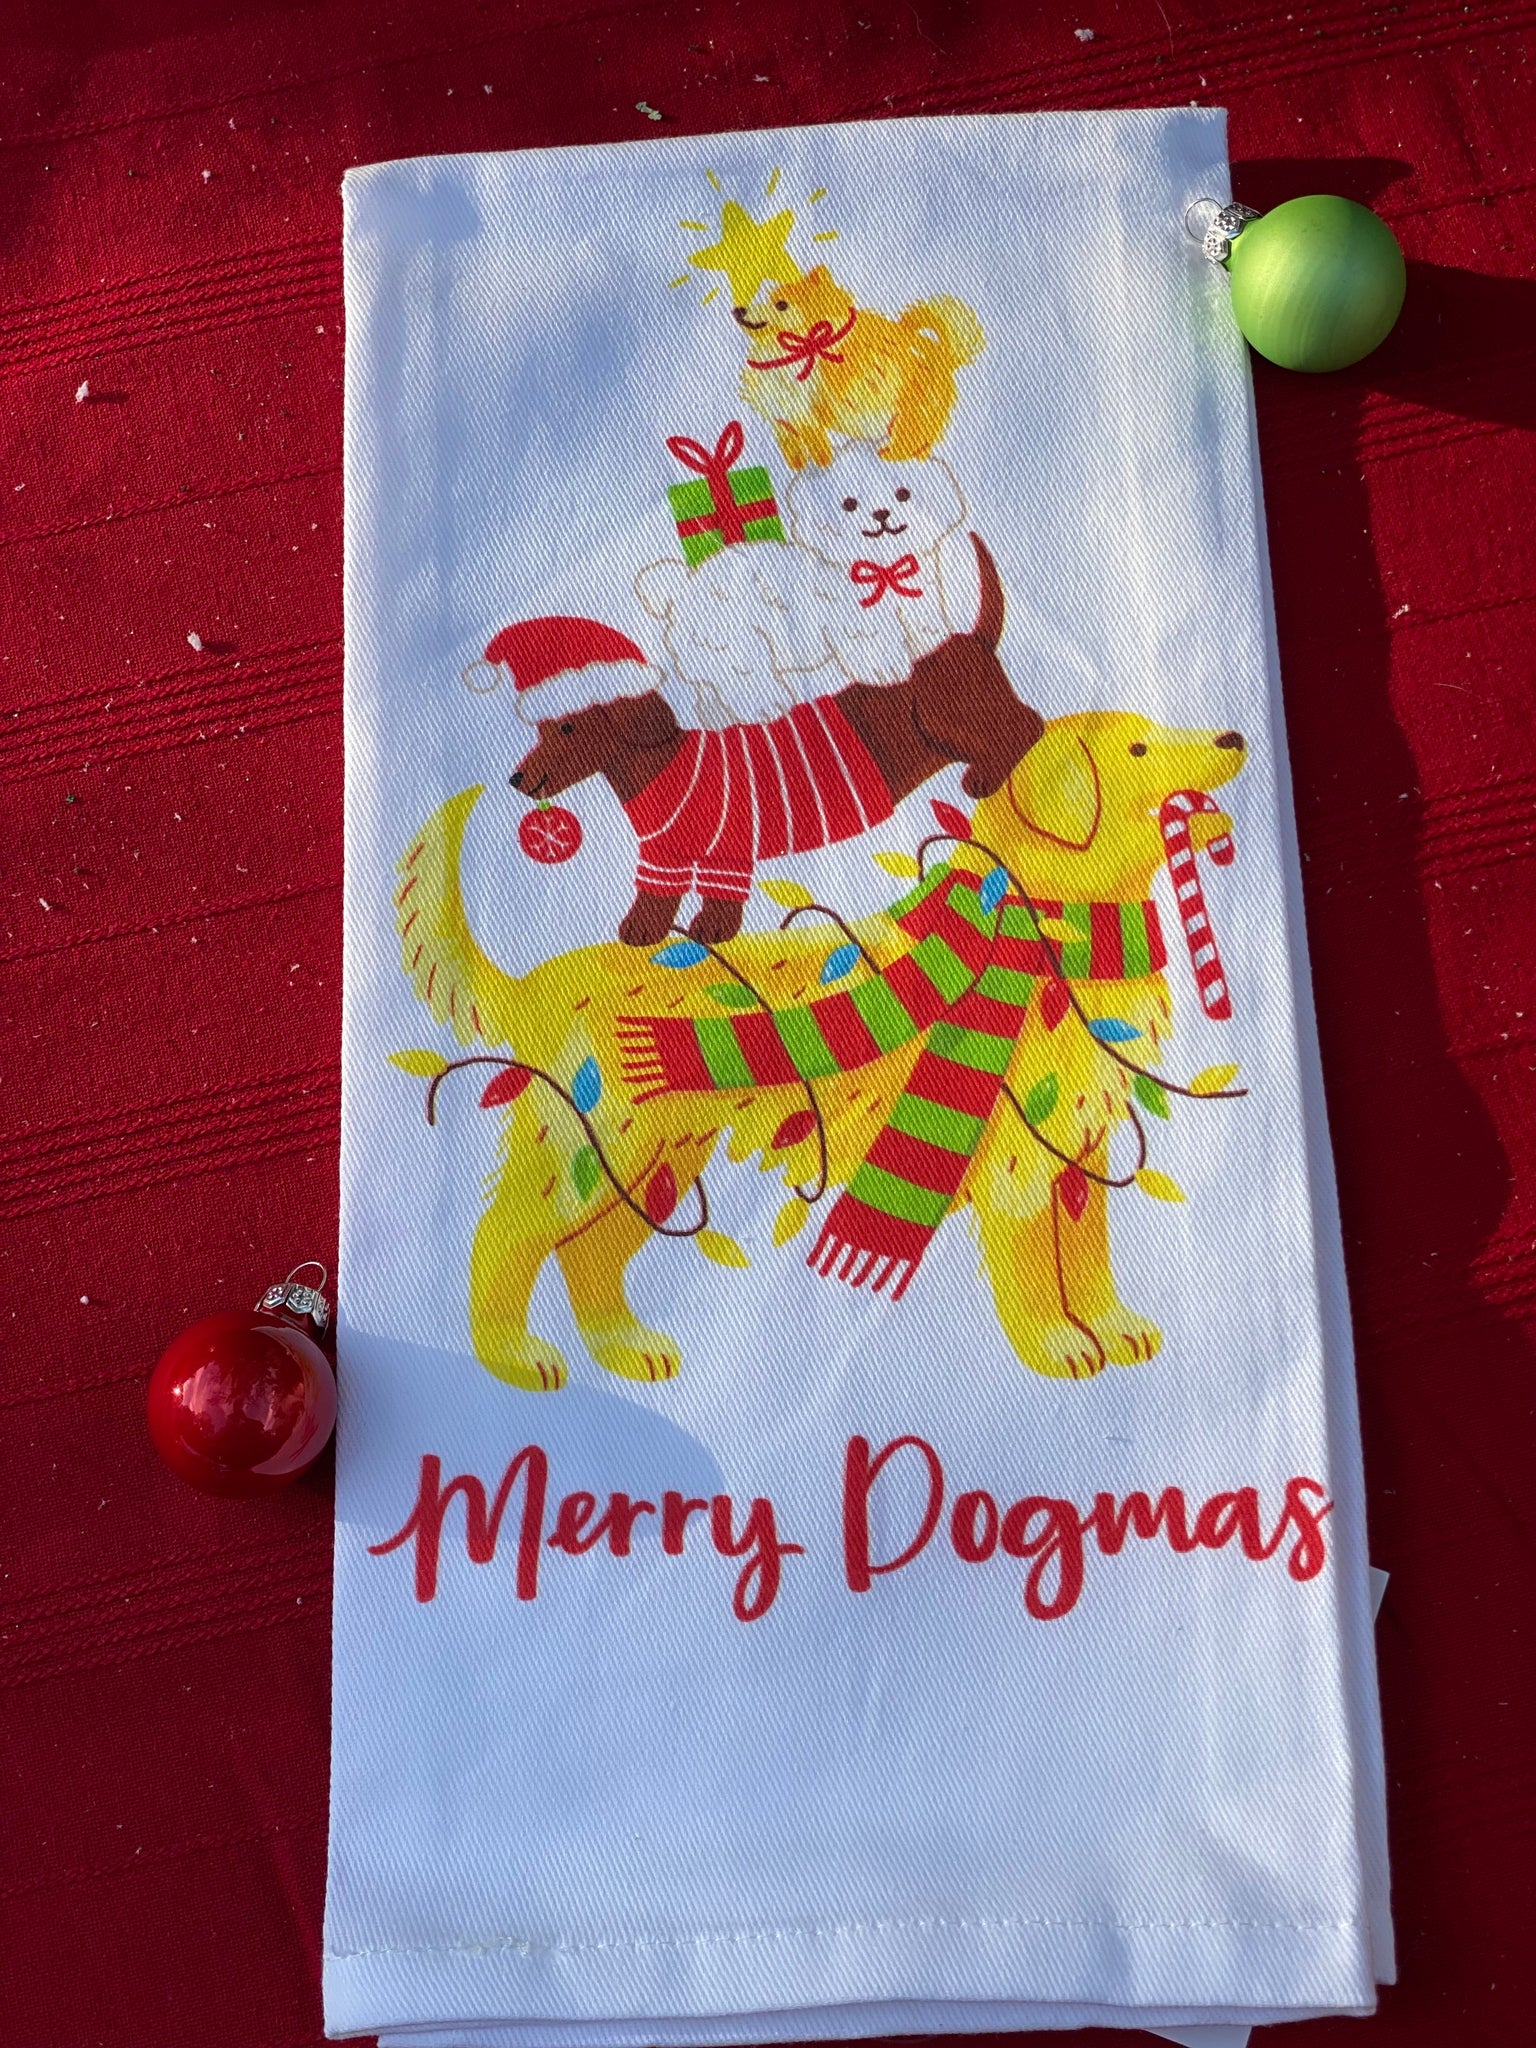 Peking Handicraft "Merry Dogmas" Kitchen Towel